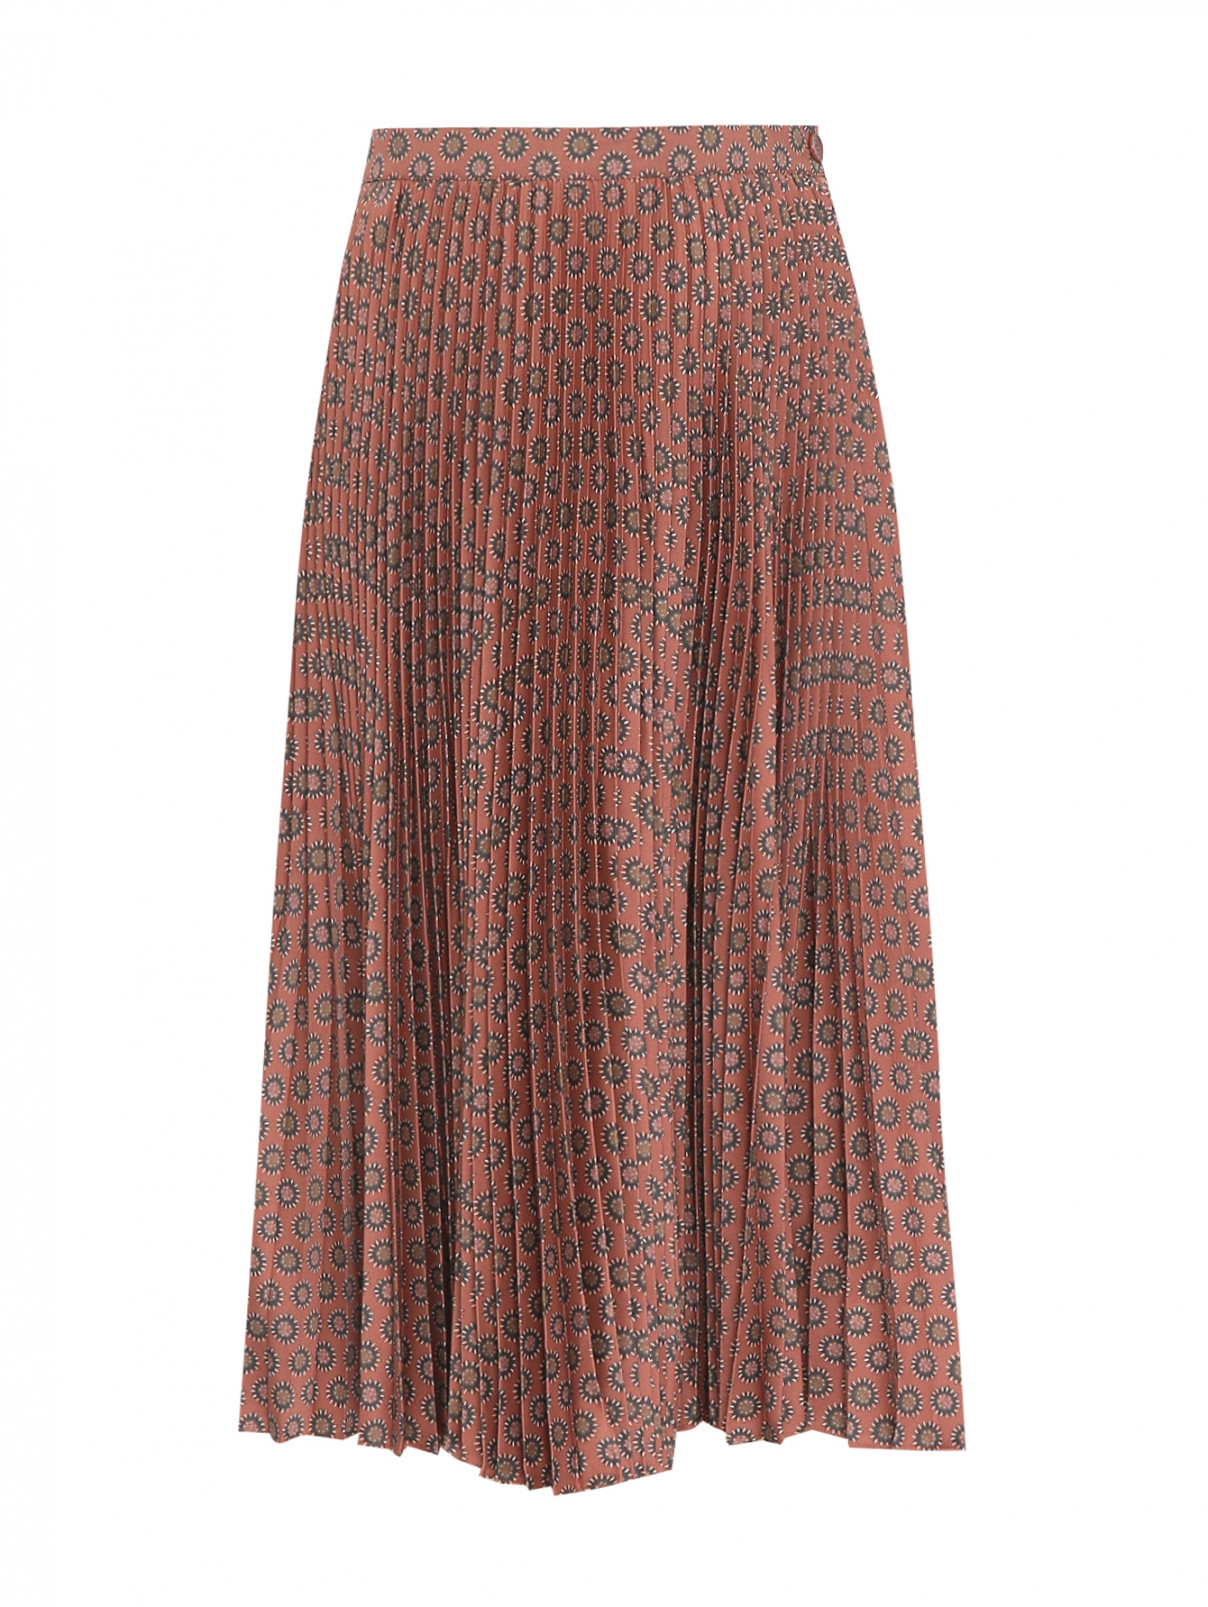 Плиссированная юбка с узором Etro  –  Общий вид  – Цвет:  Коричневый